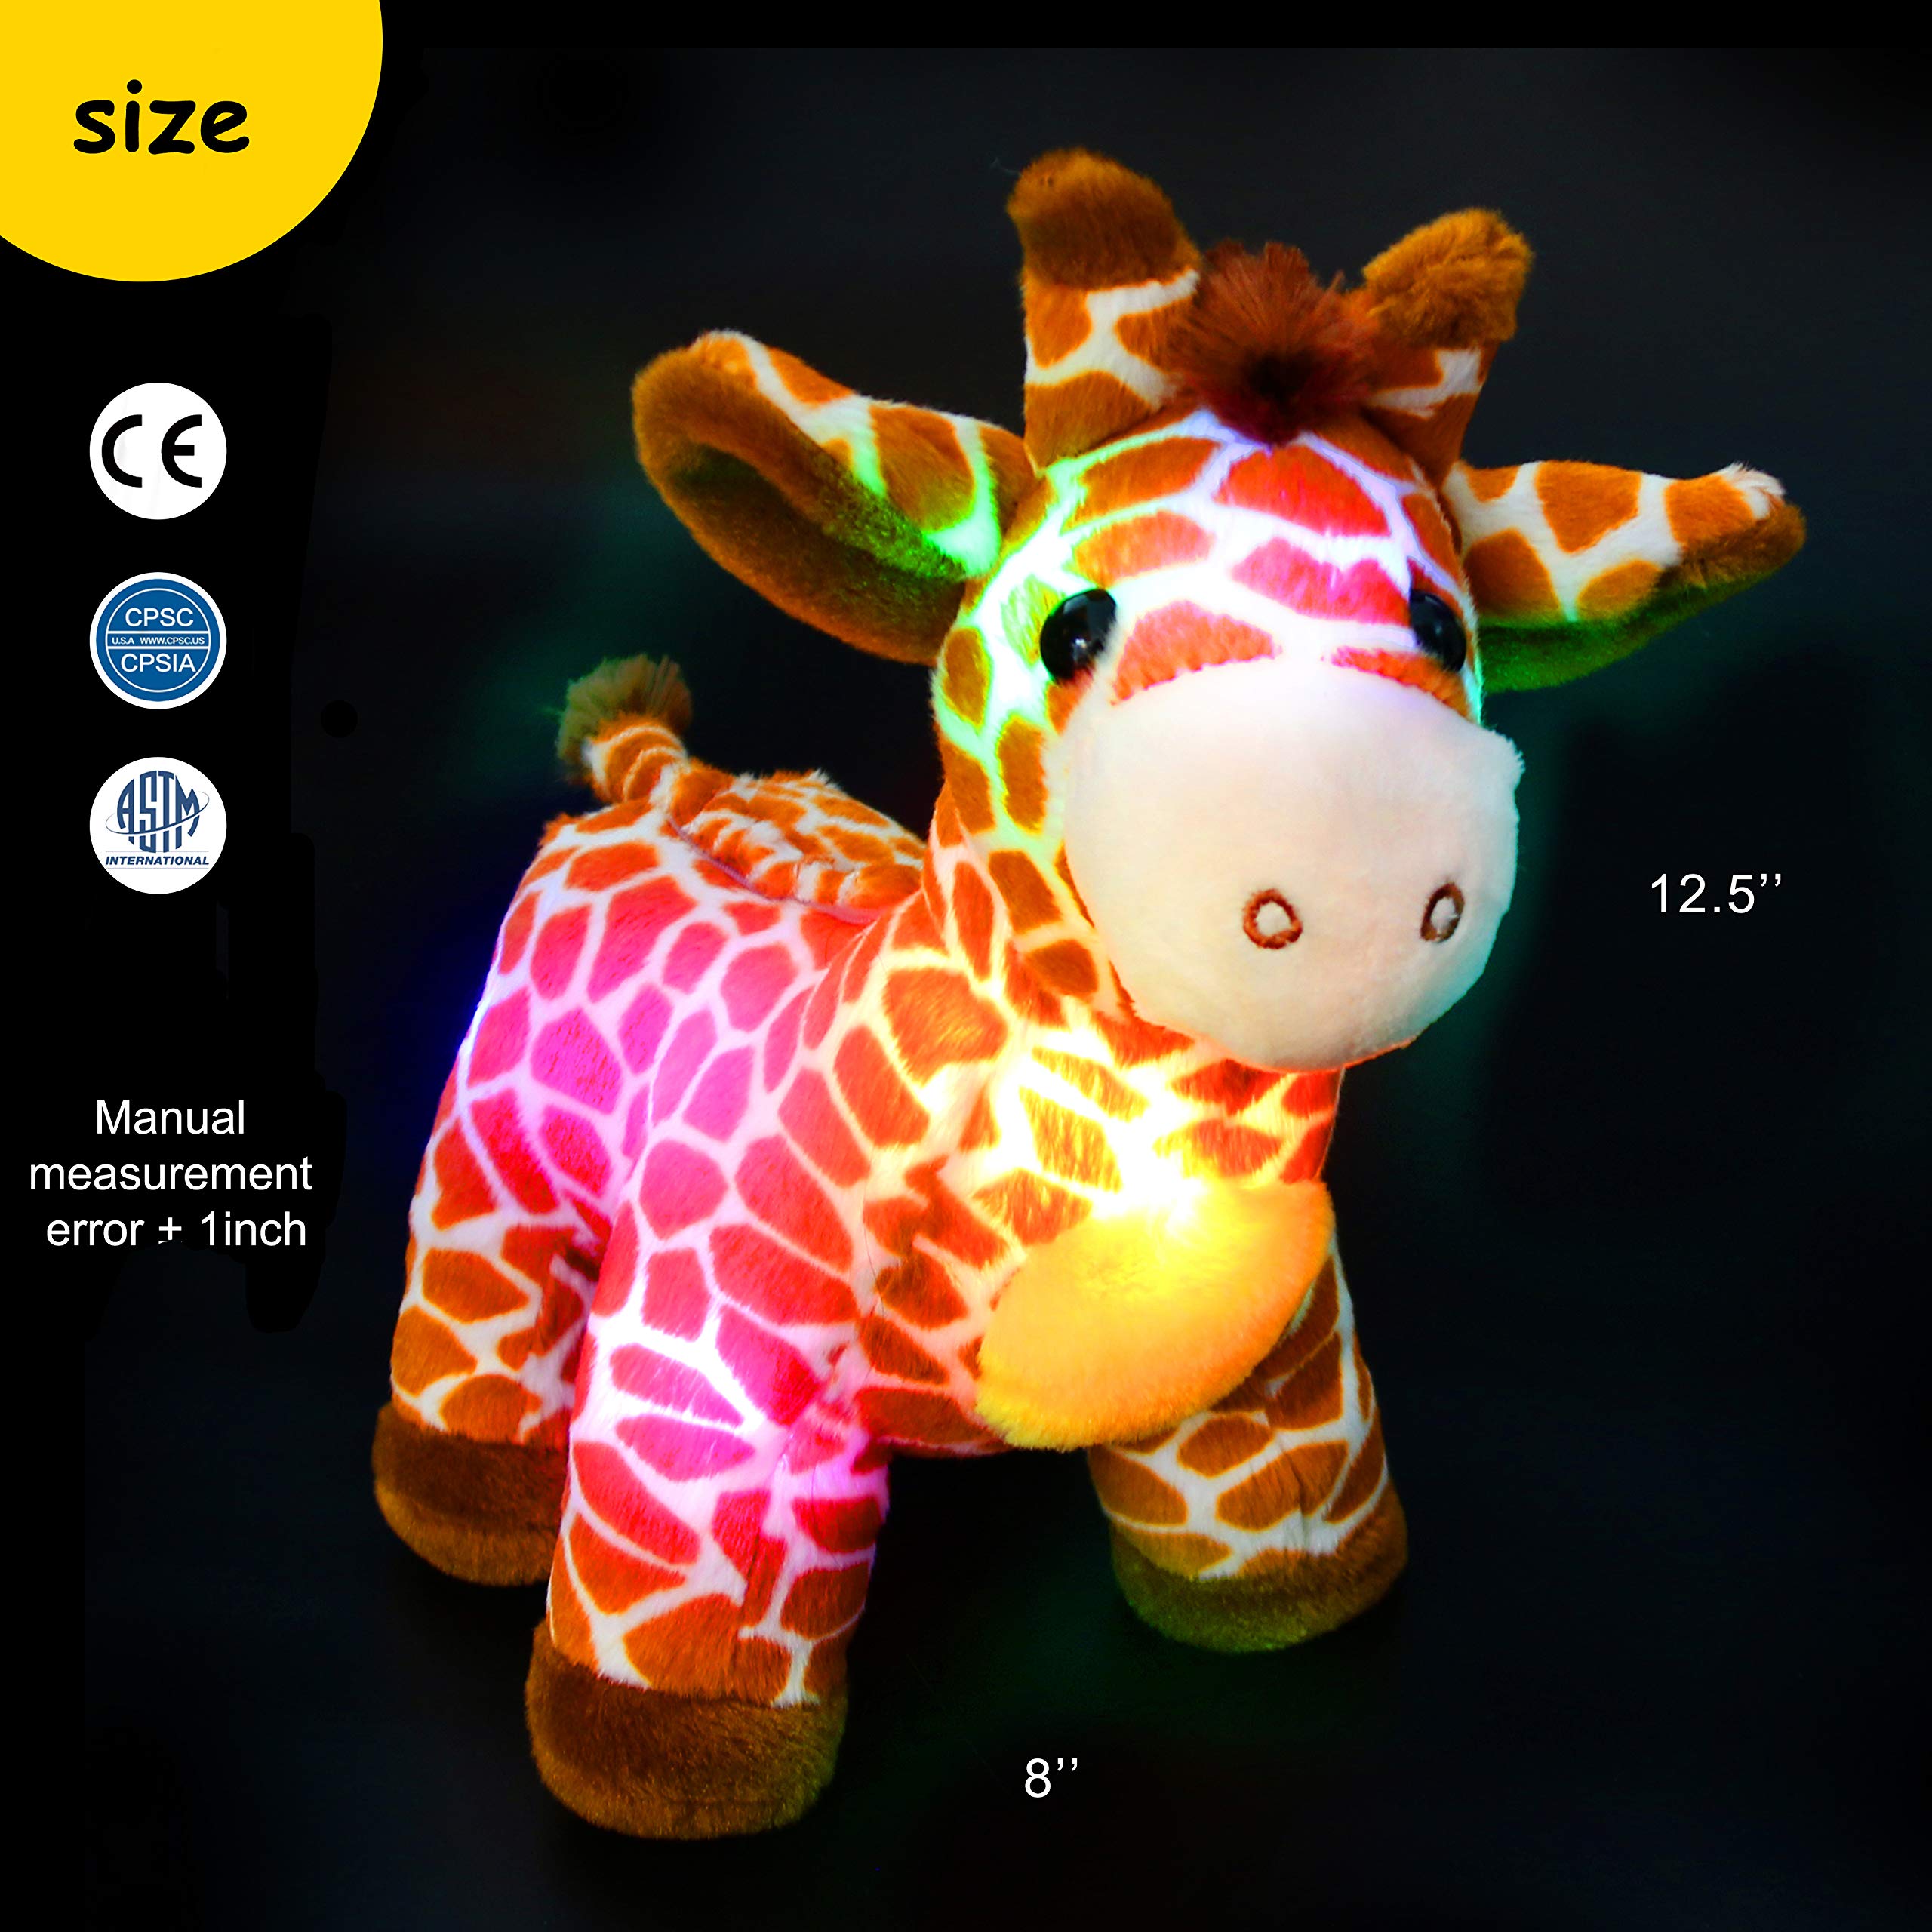 Bstaofy LED Giraffe Stuffed Plush Light Up Jungle Pal Toy - Glow Guards